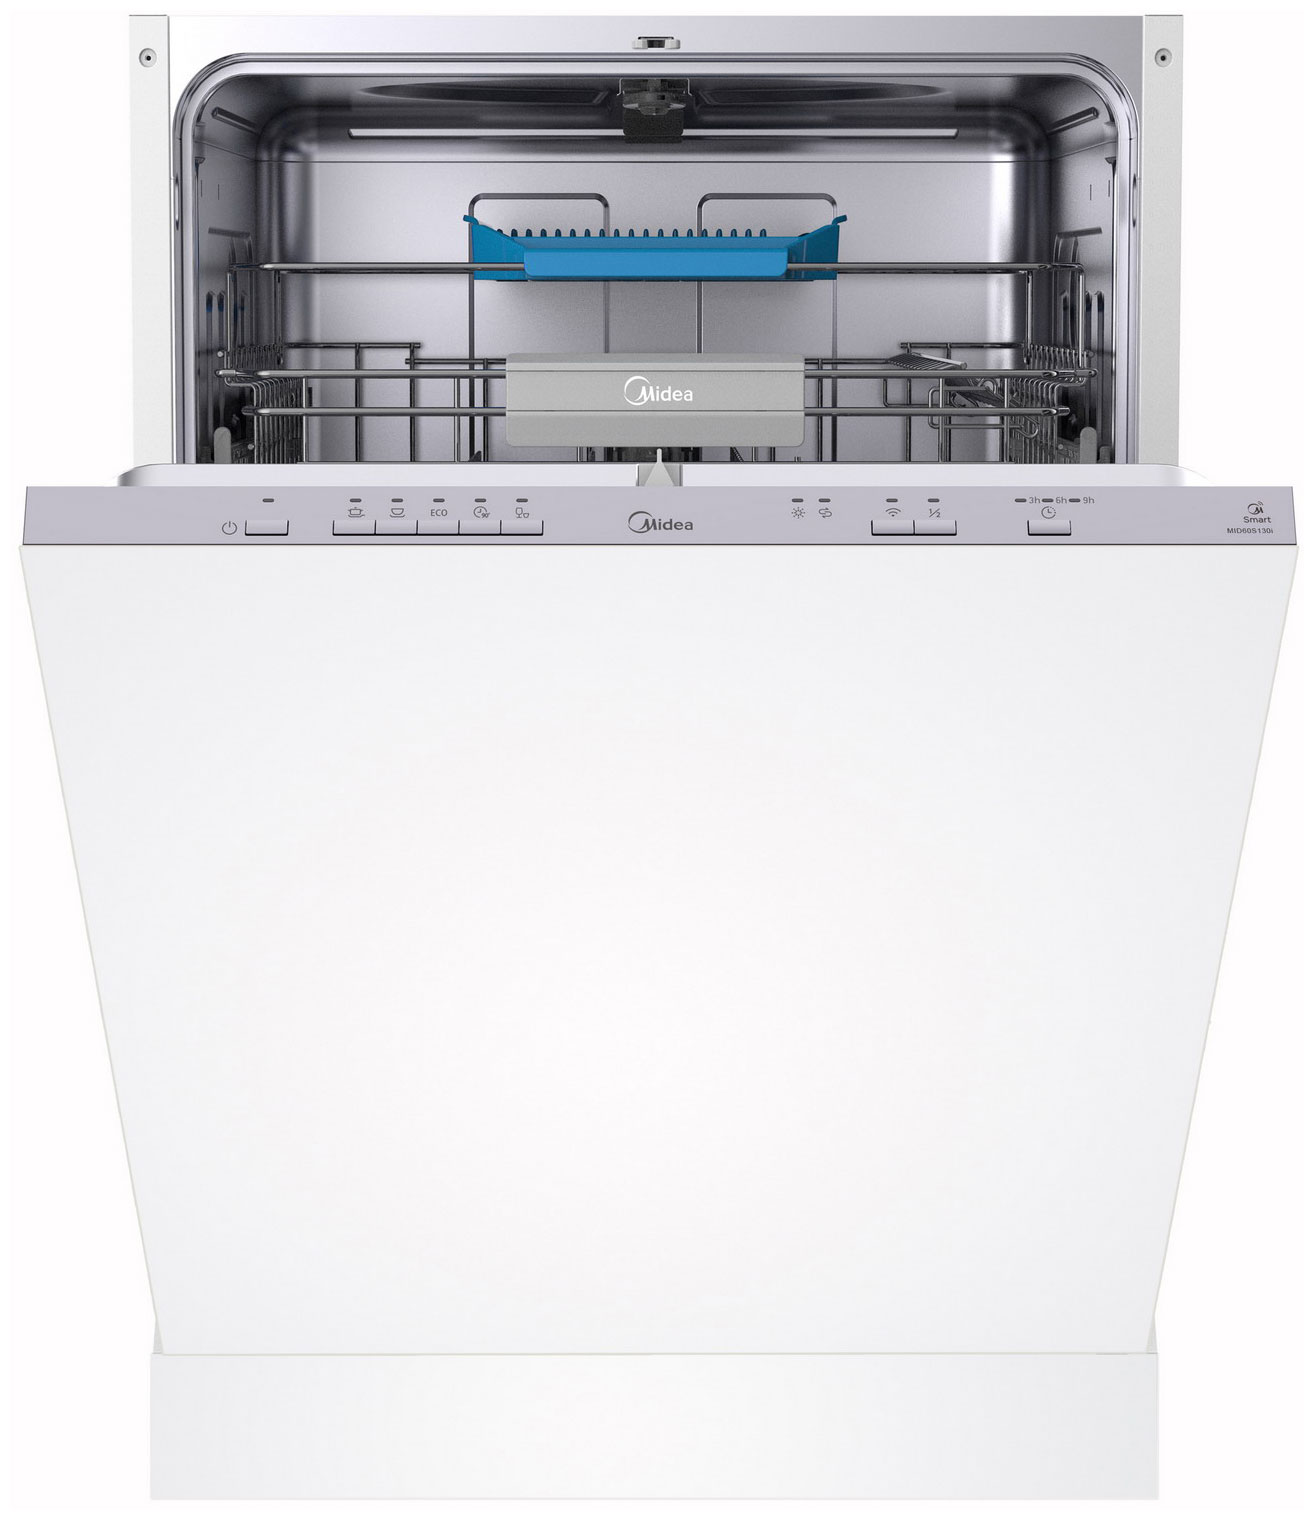 Встраиваемая посудомоечная машина Midea MID60S130i встраиваемая посудомоечная машина midea mid45s450i